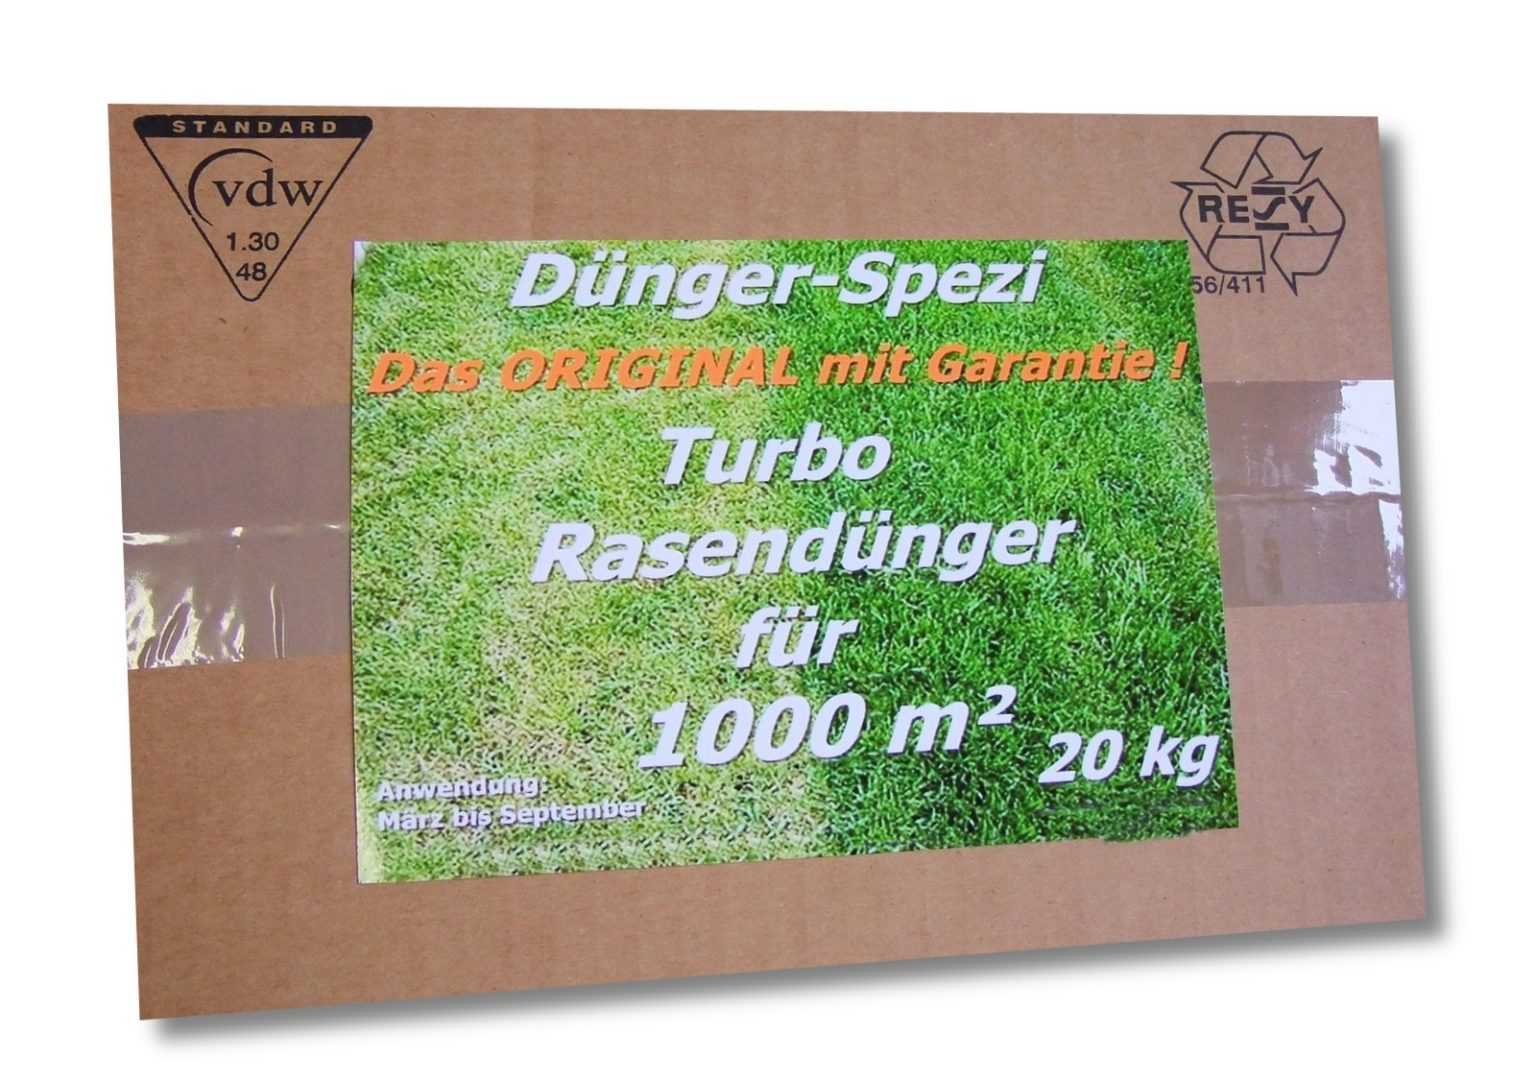 TURBO Rasendünger Dünger für 1000m² Langzeitwirkung NEU +1kg Rasendünger